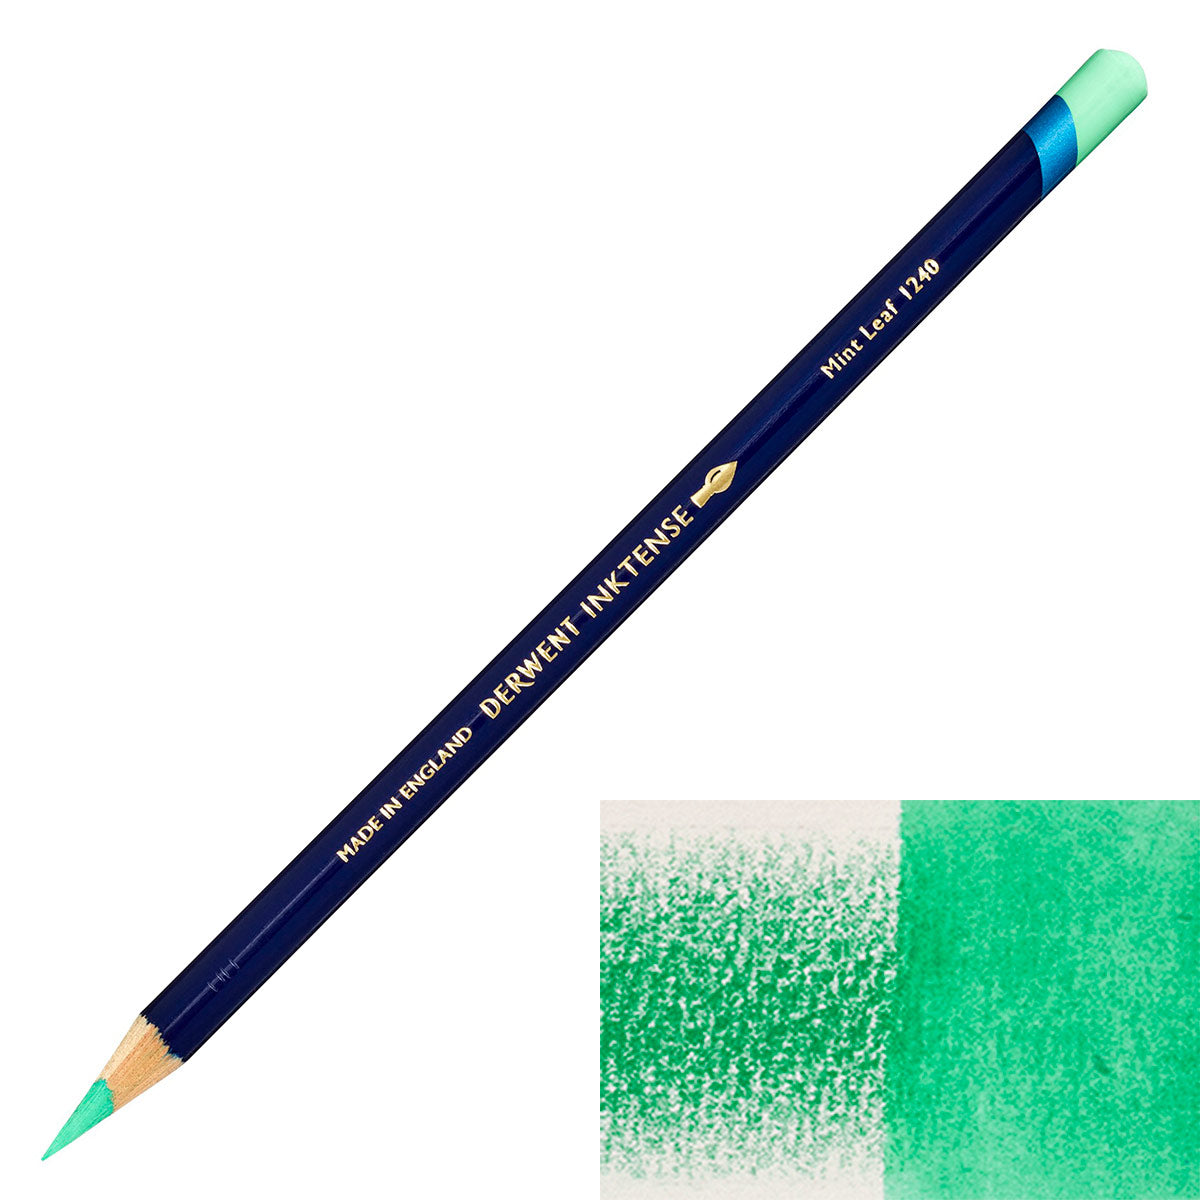 Derwent - Inktense Pencil - Mint Leaf 1240